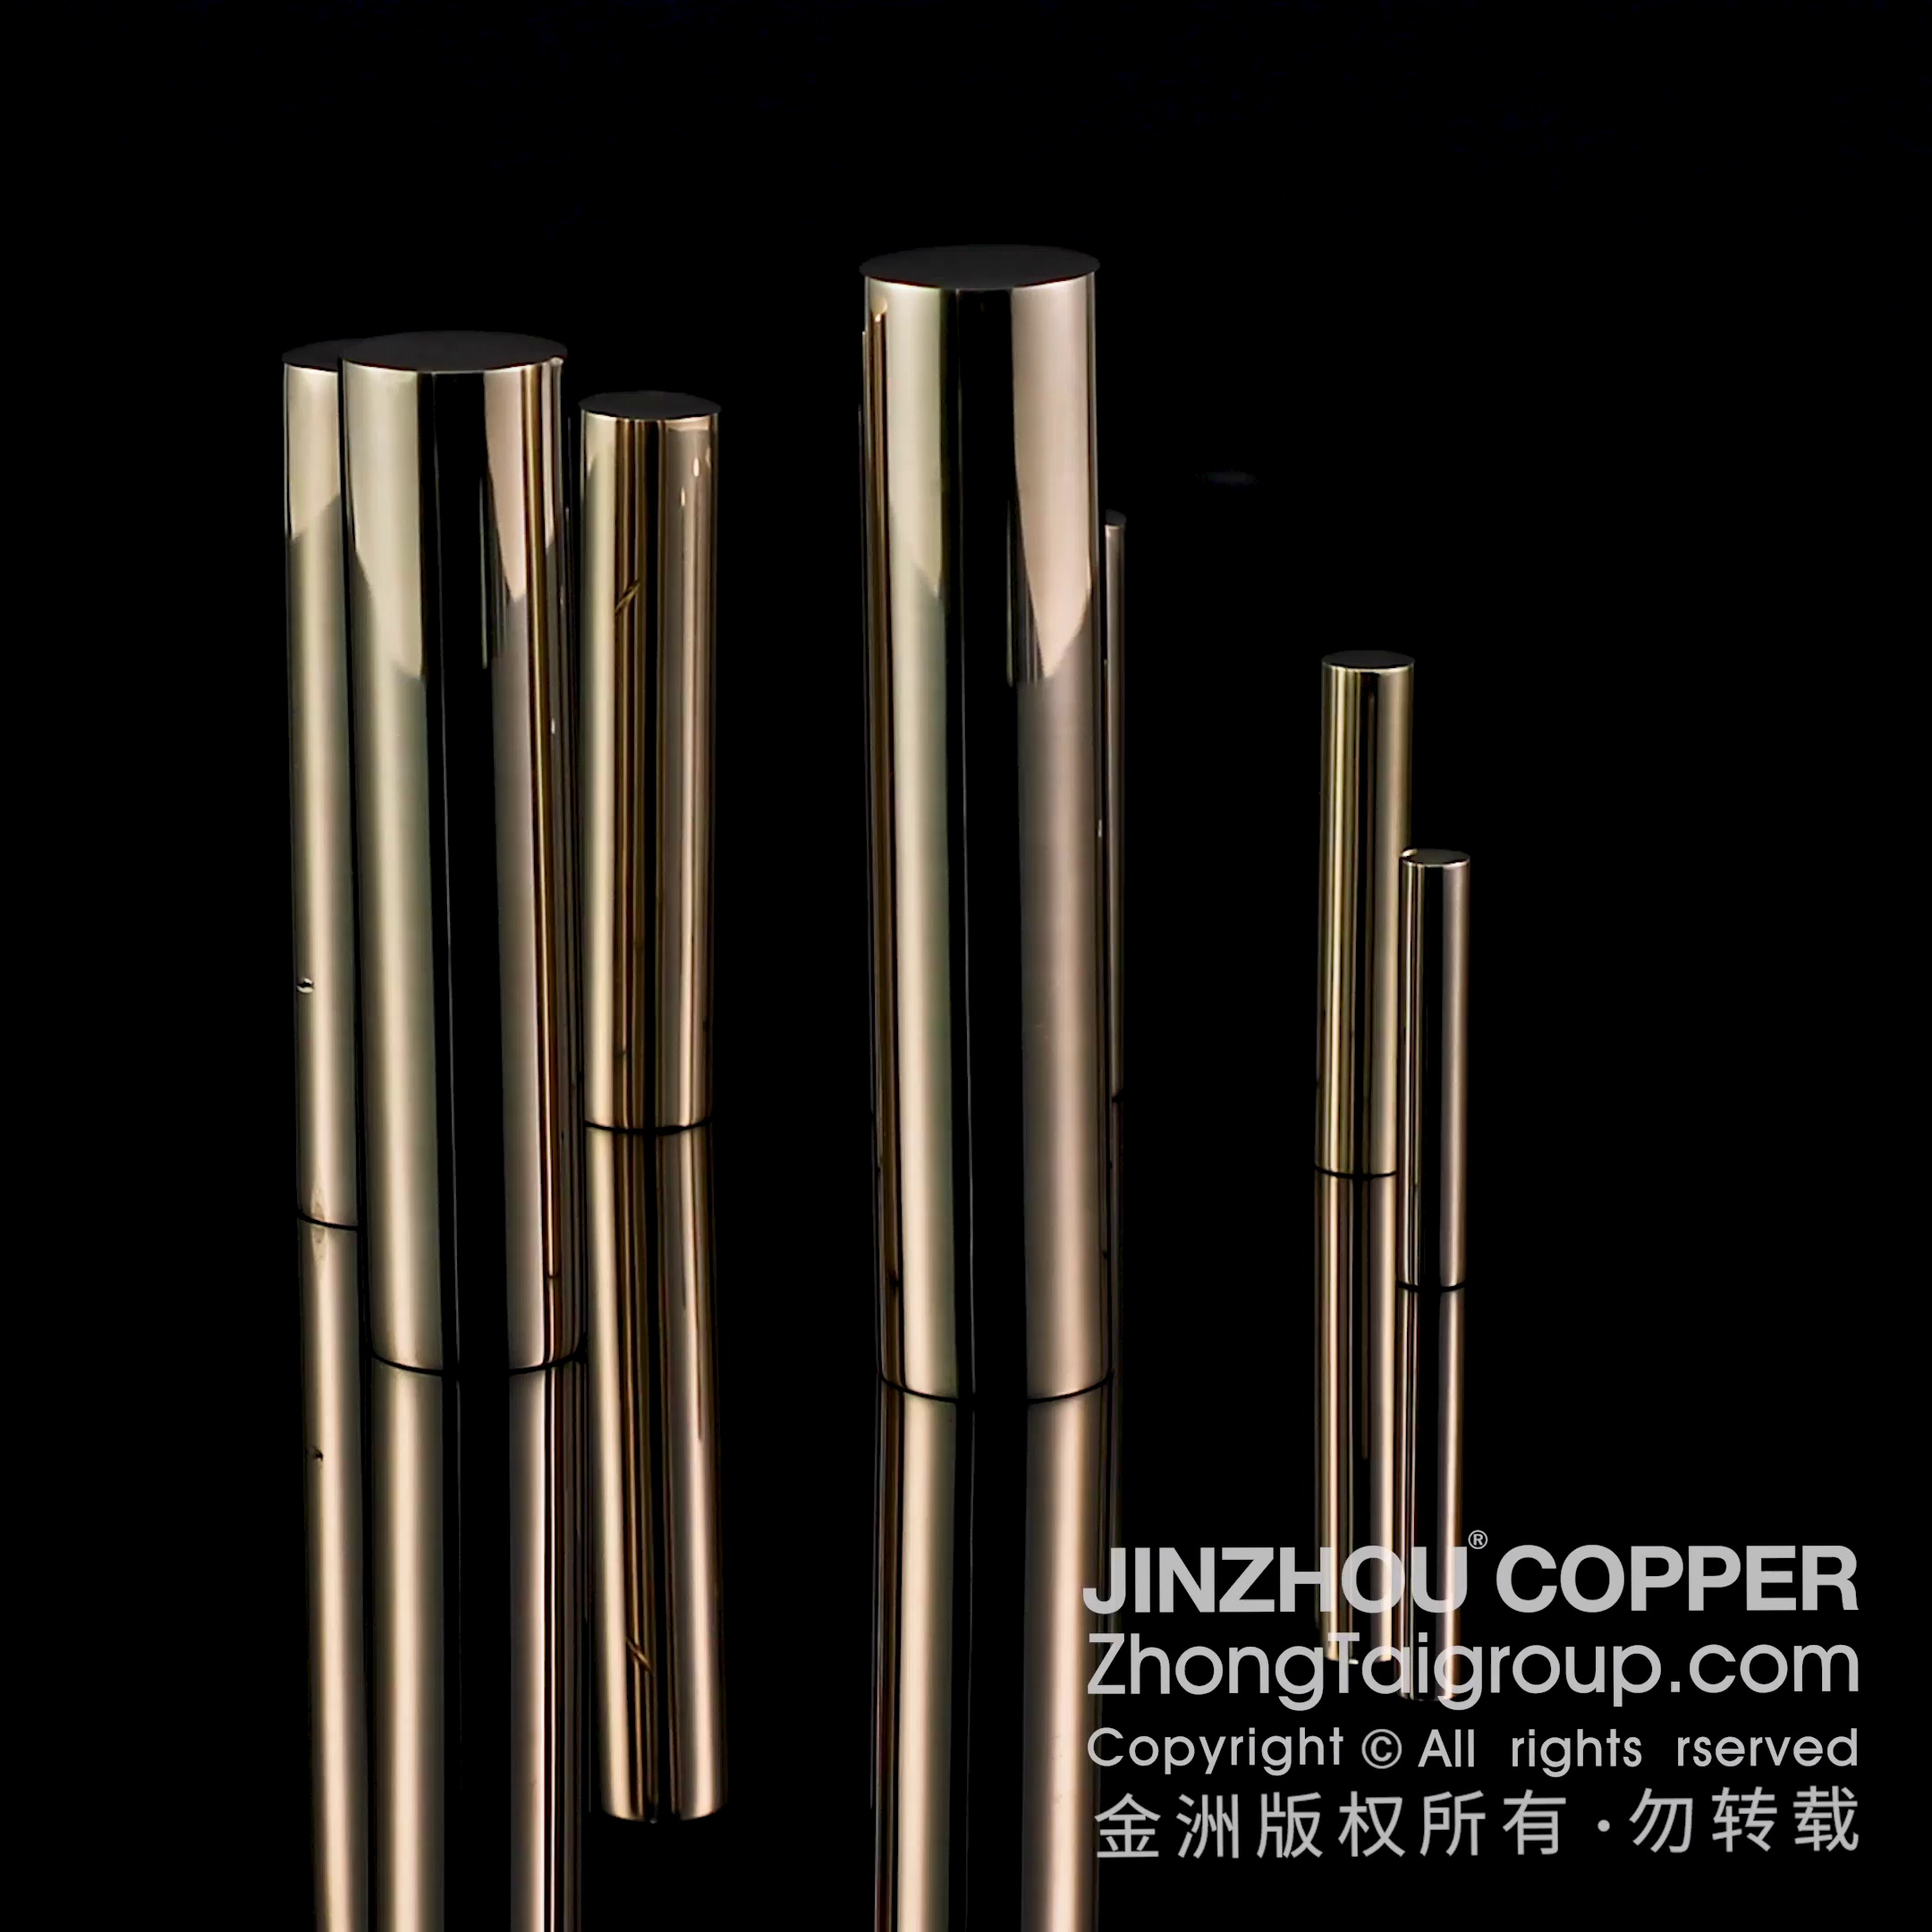 Lead Free copper rod, lead free copper rod manufacturer, lead free copper rod factory, lead free copper rod supplier